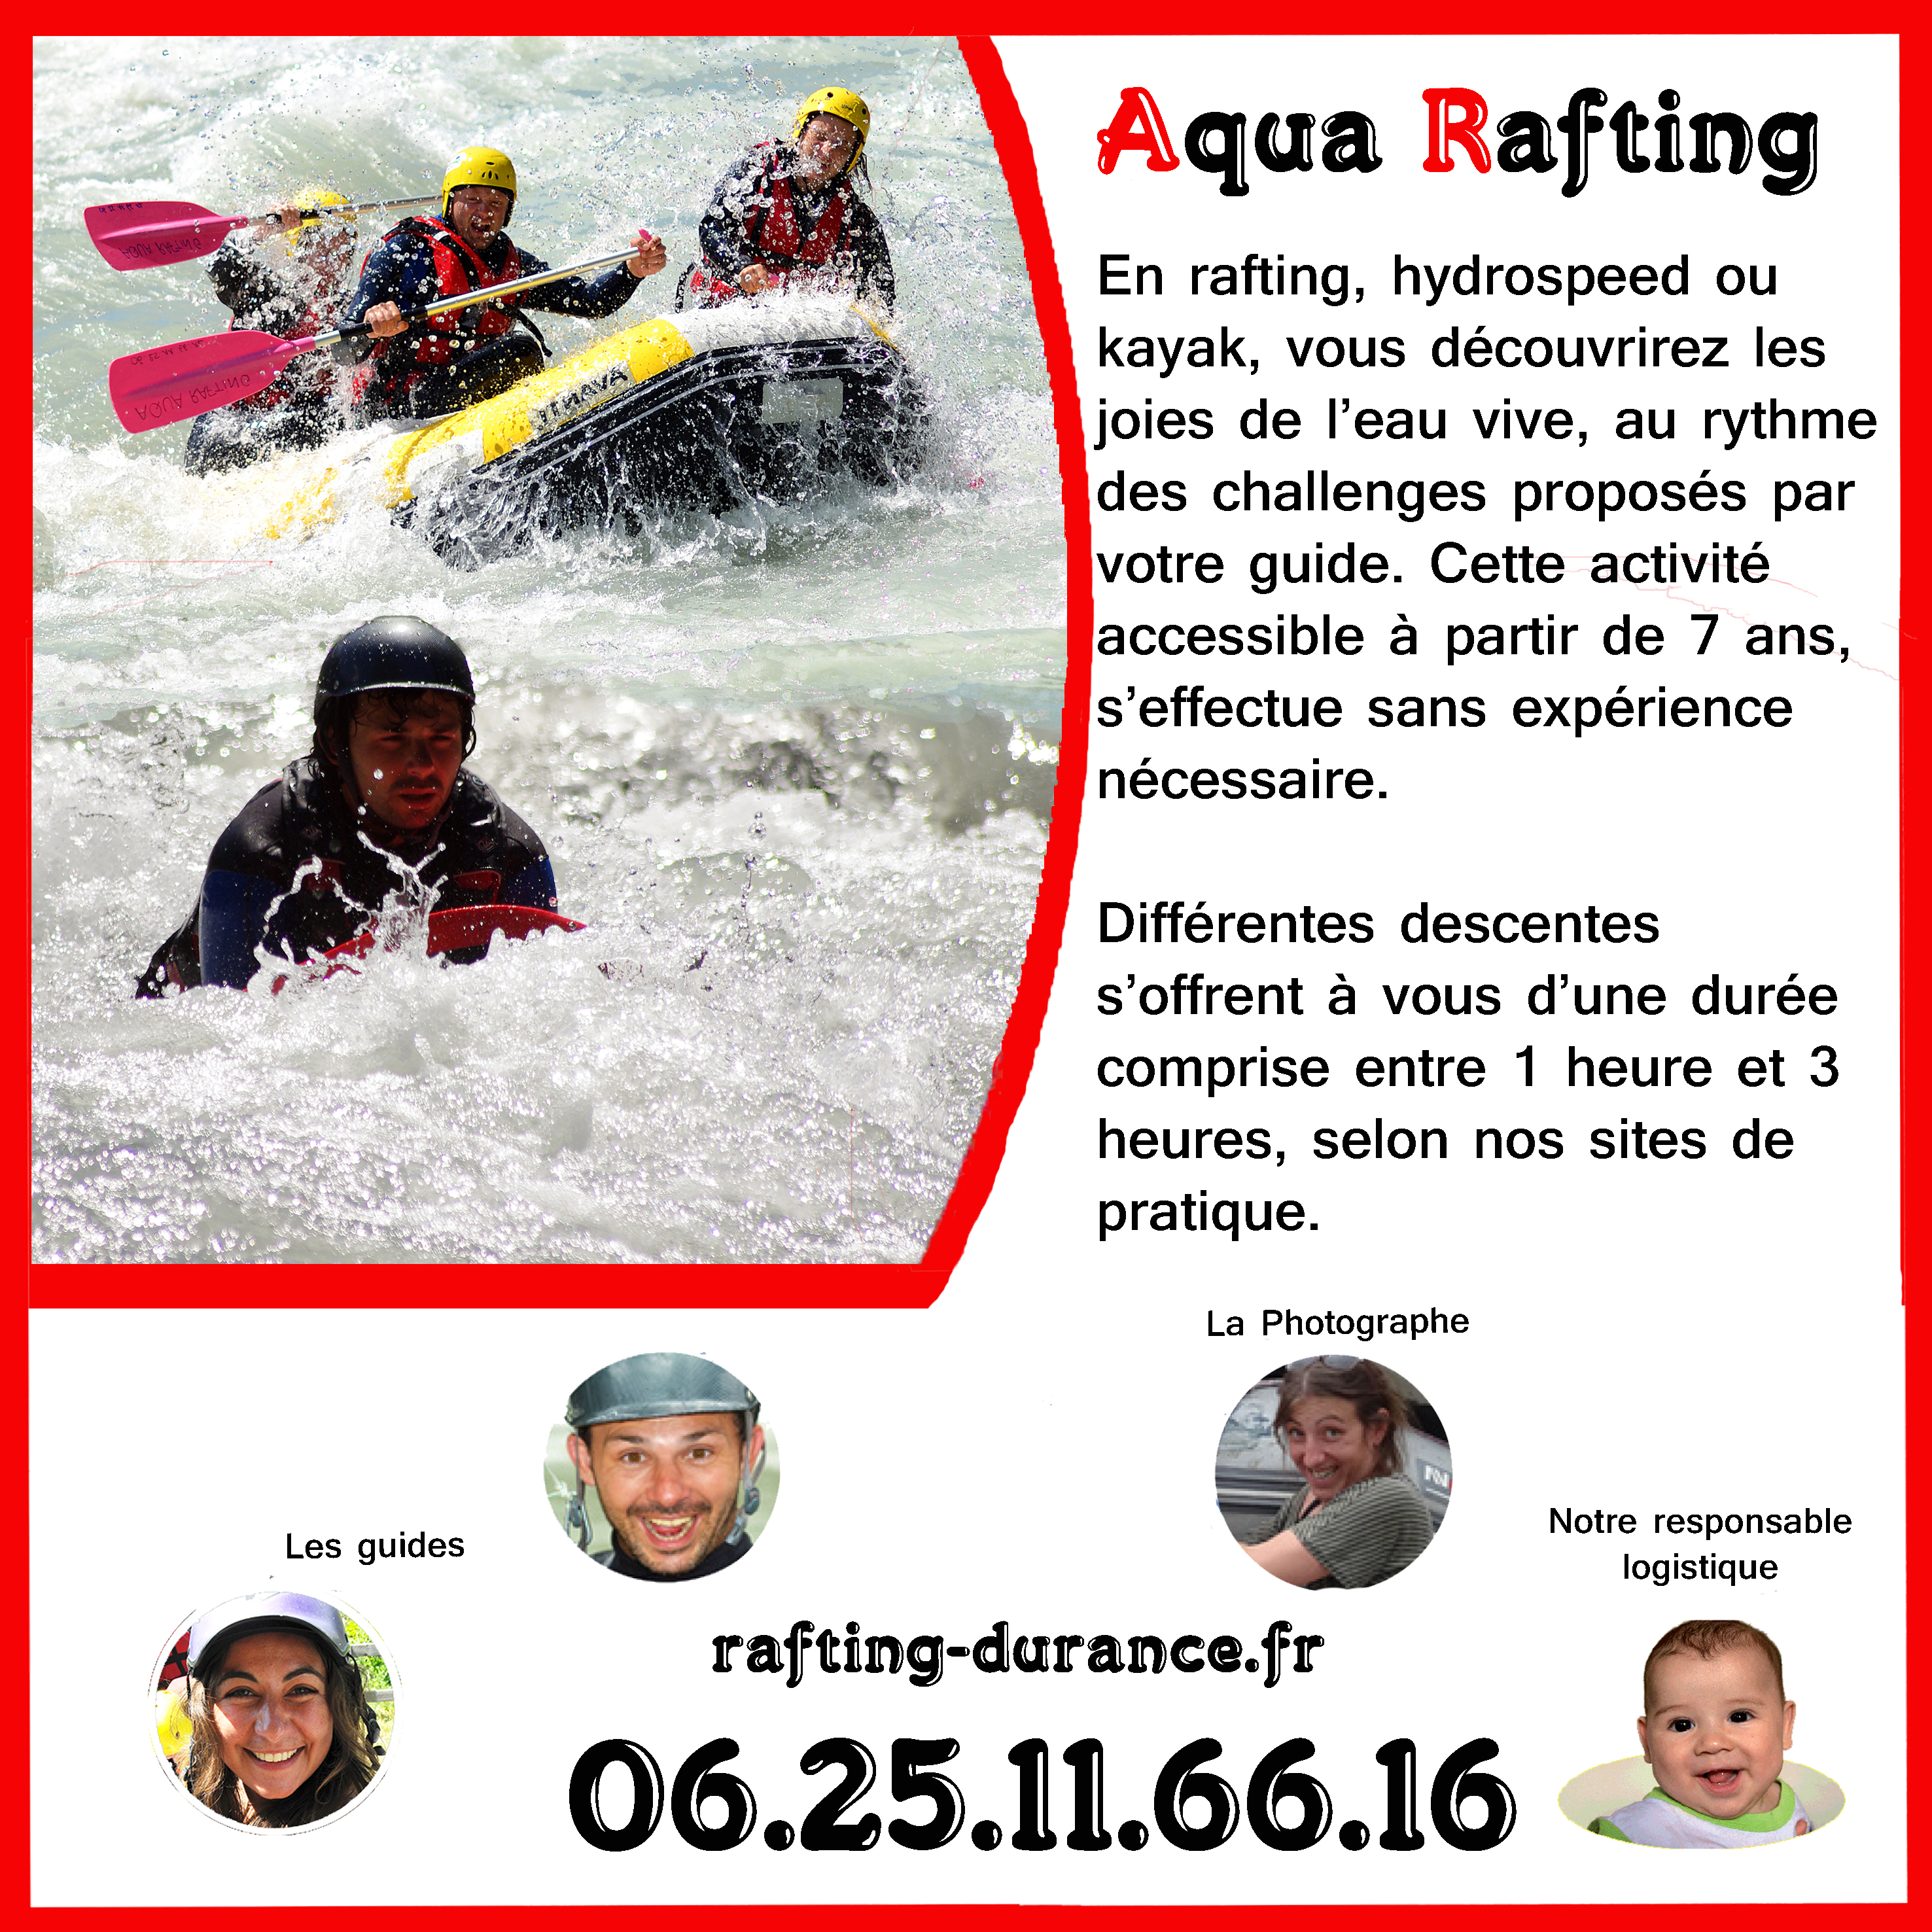 Aqua Rafting